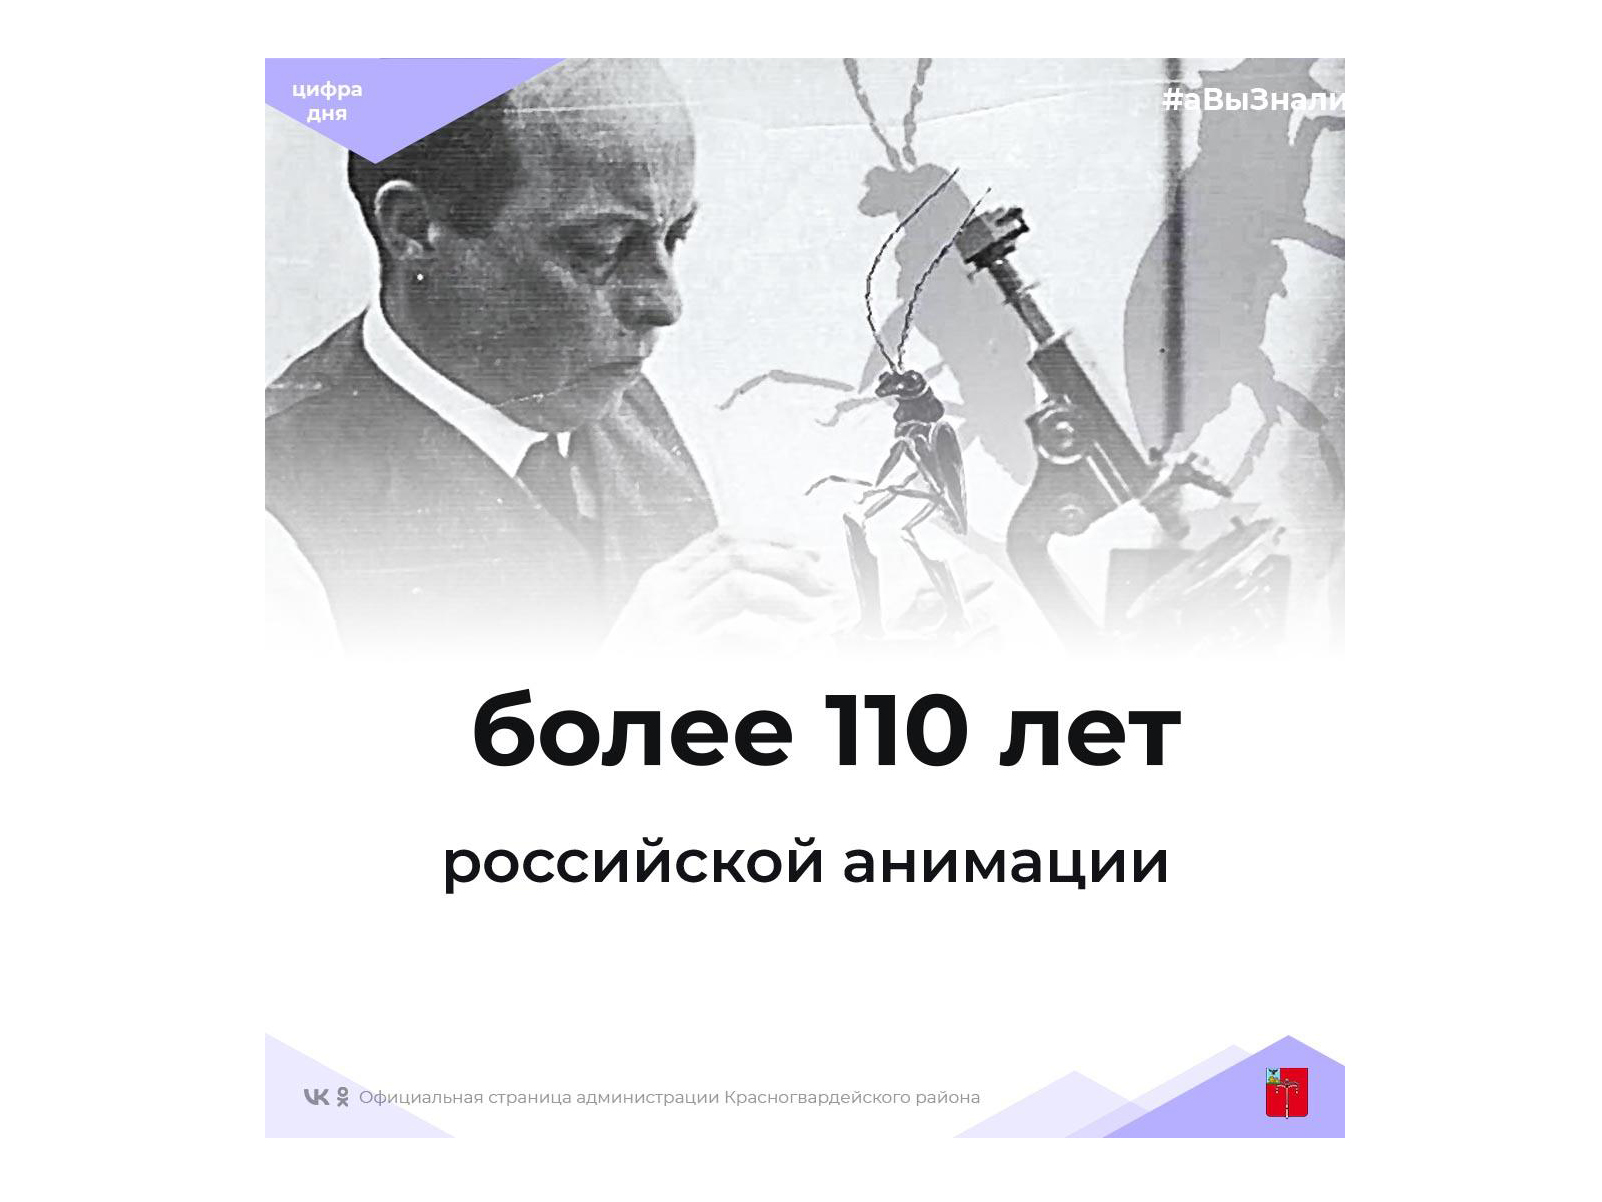 #аВыЗнали, что российской анимации более 110 лет, а 8 апреля отмечается День российской анимации?.